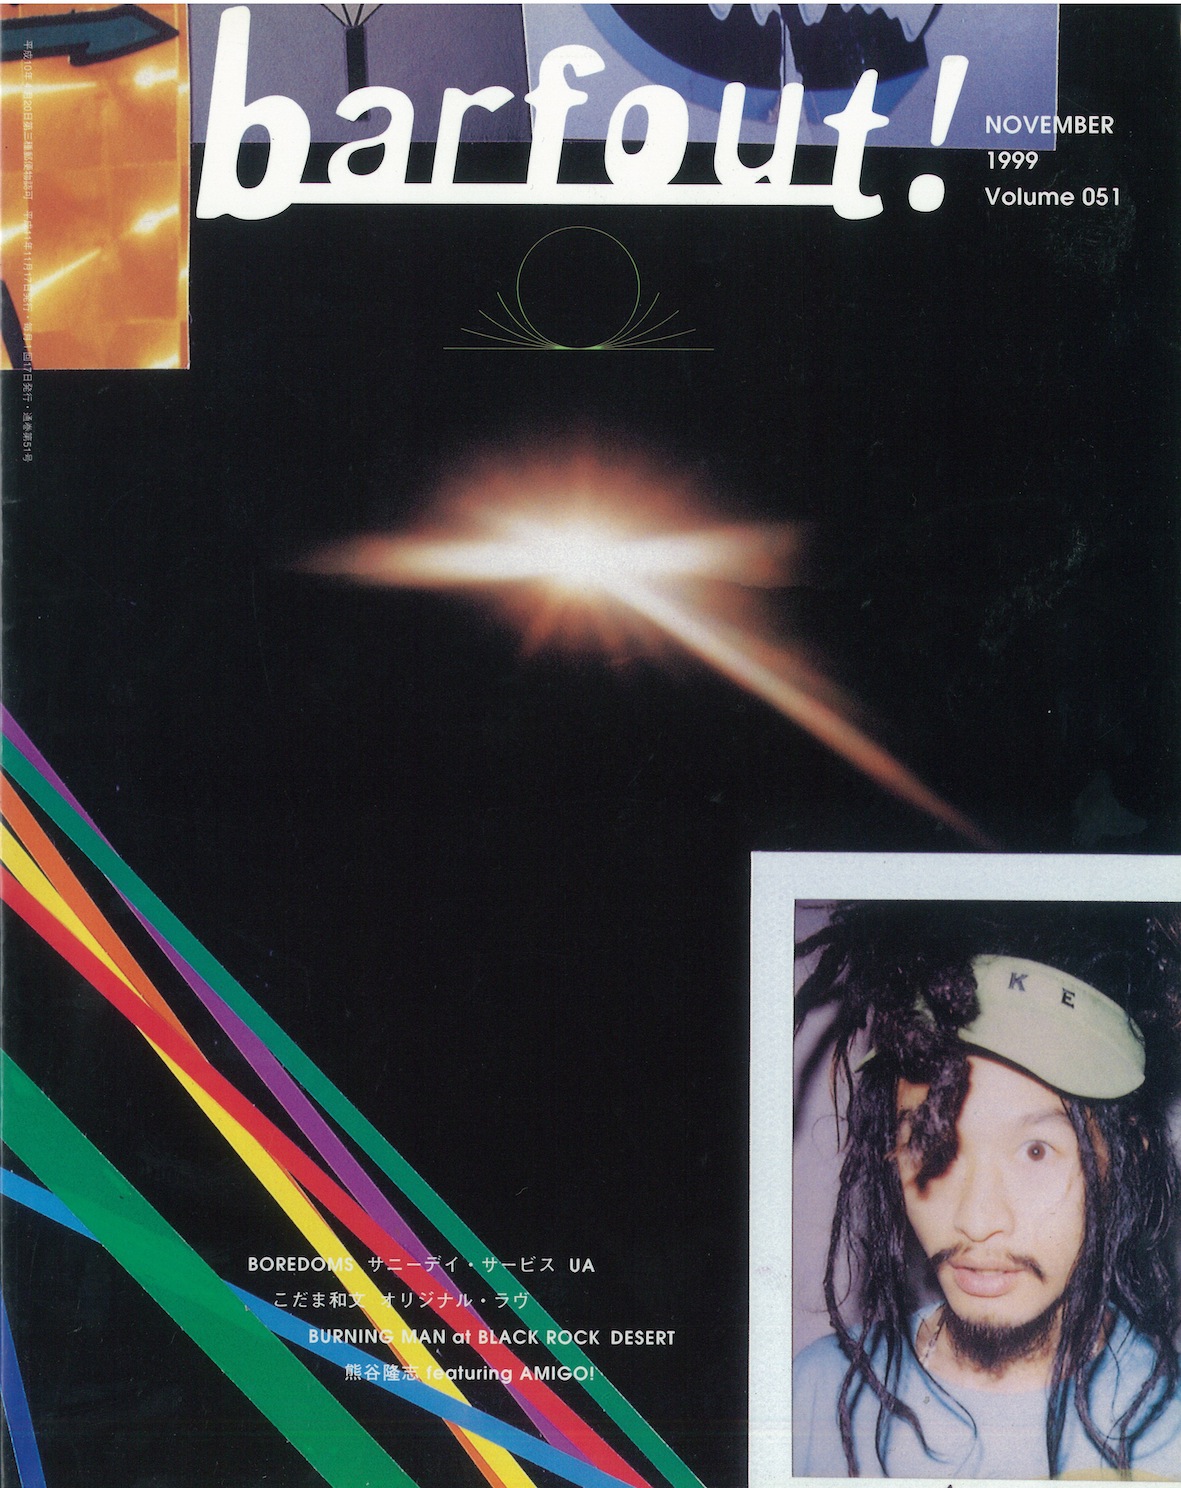 NOVEMBER 1999 VOLUME 51